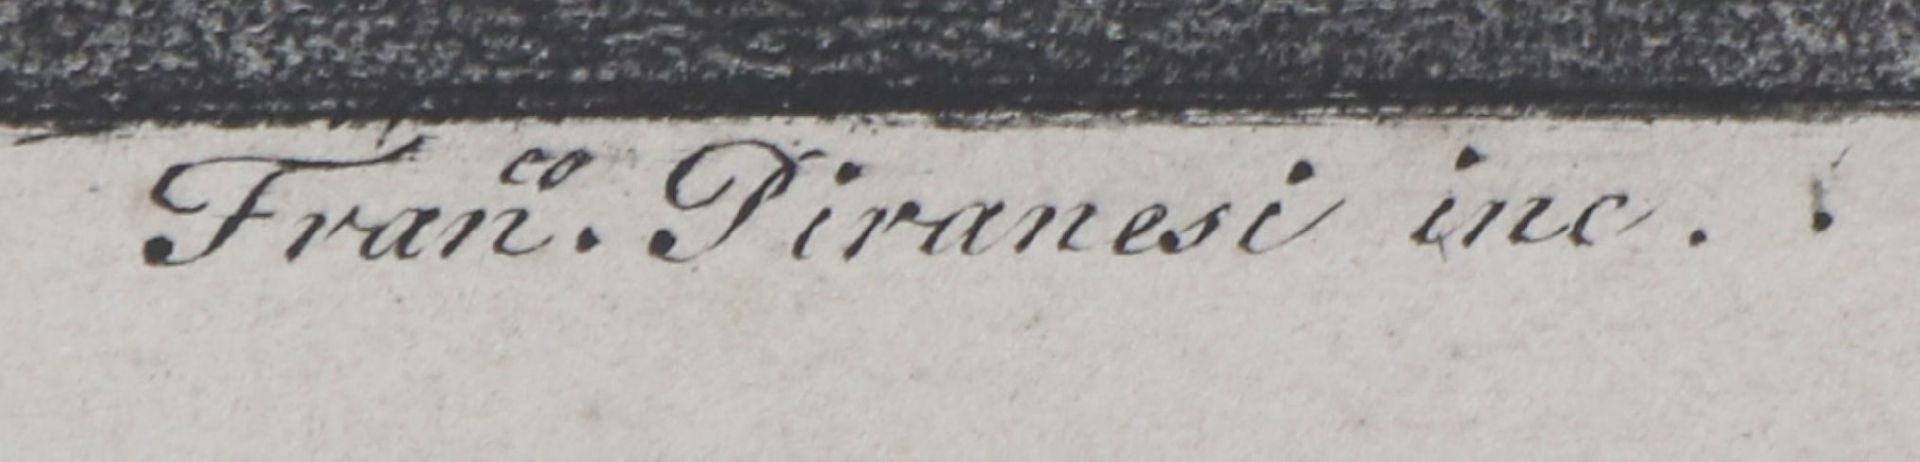 GIOVANNI BATTISTA PIRANESI (1720 wohl Mogliano bei Mestre - 1778 Rom)Kupferstich, ¨Fuoco artificiale - Bild 3 aus 6